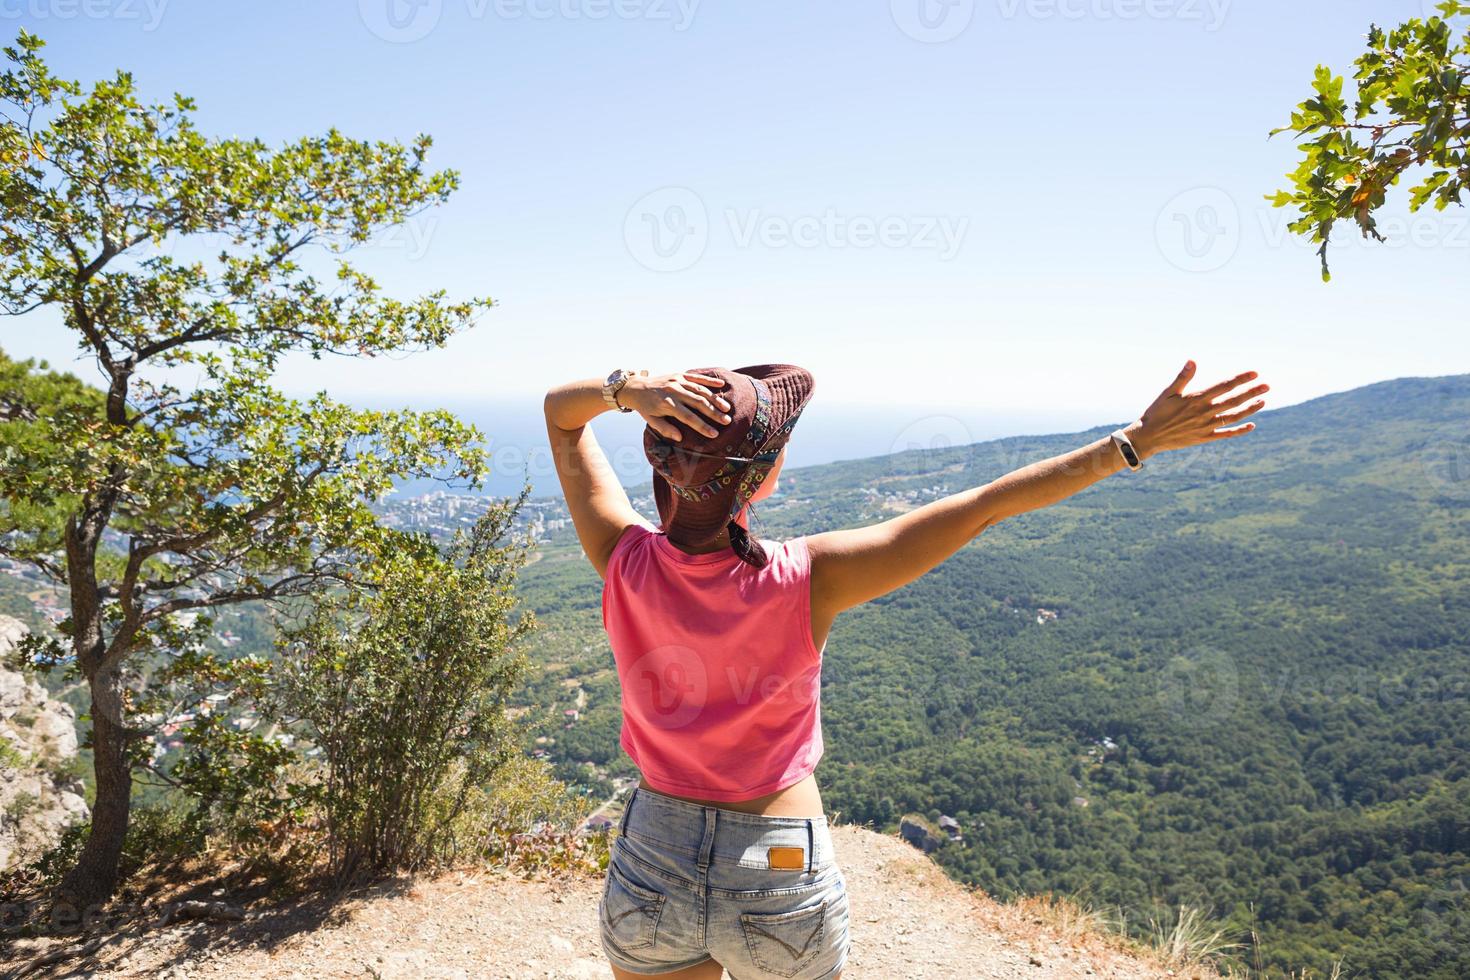 vrouwelijke toerist met haar handen omhoog kijkt naar panoramisch uitzicht op de top van de berg en verheugt zich, geniet van vrijheid en avontuur. trekking, reizen, actief ecotoerisme, gezonde levensstijl, wandelen foto